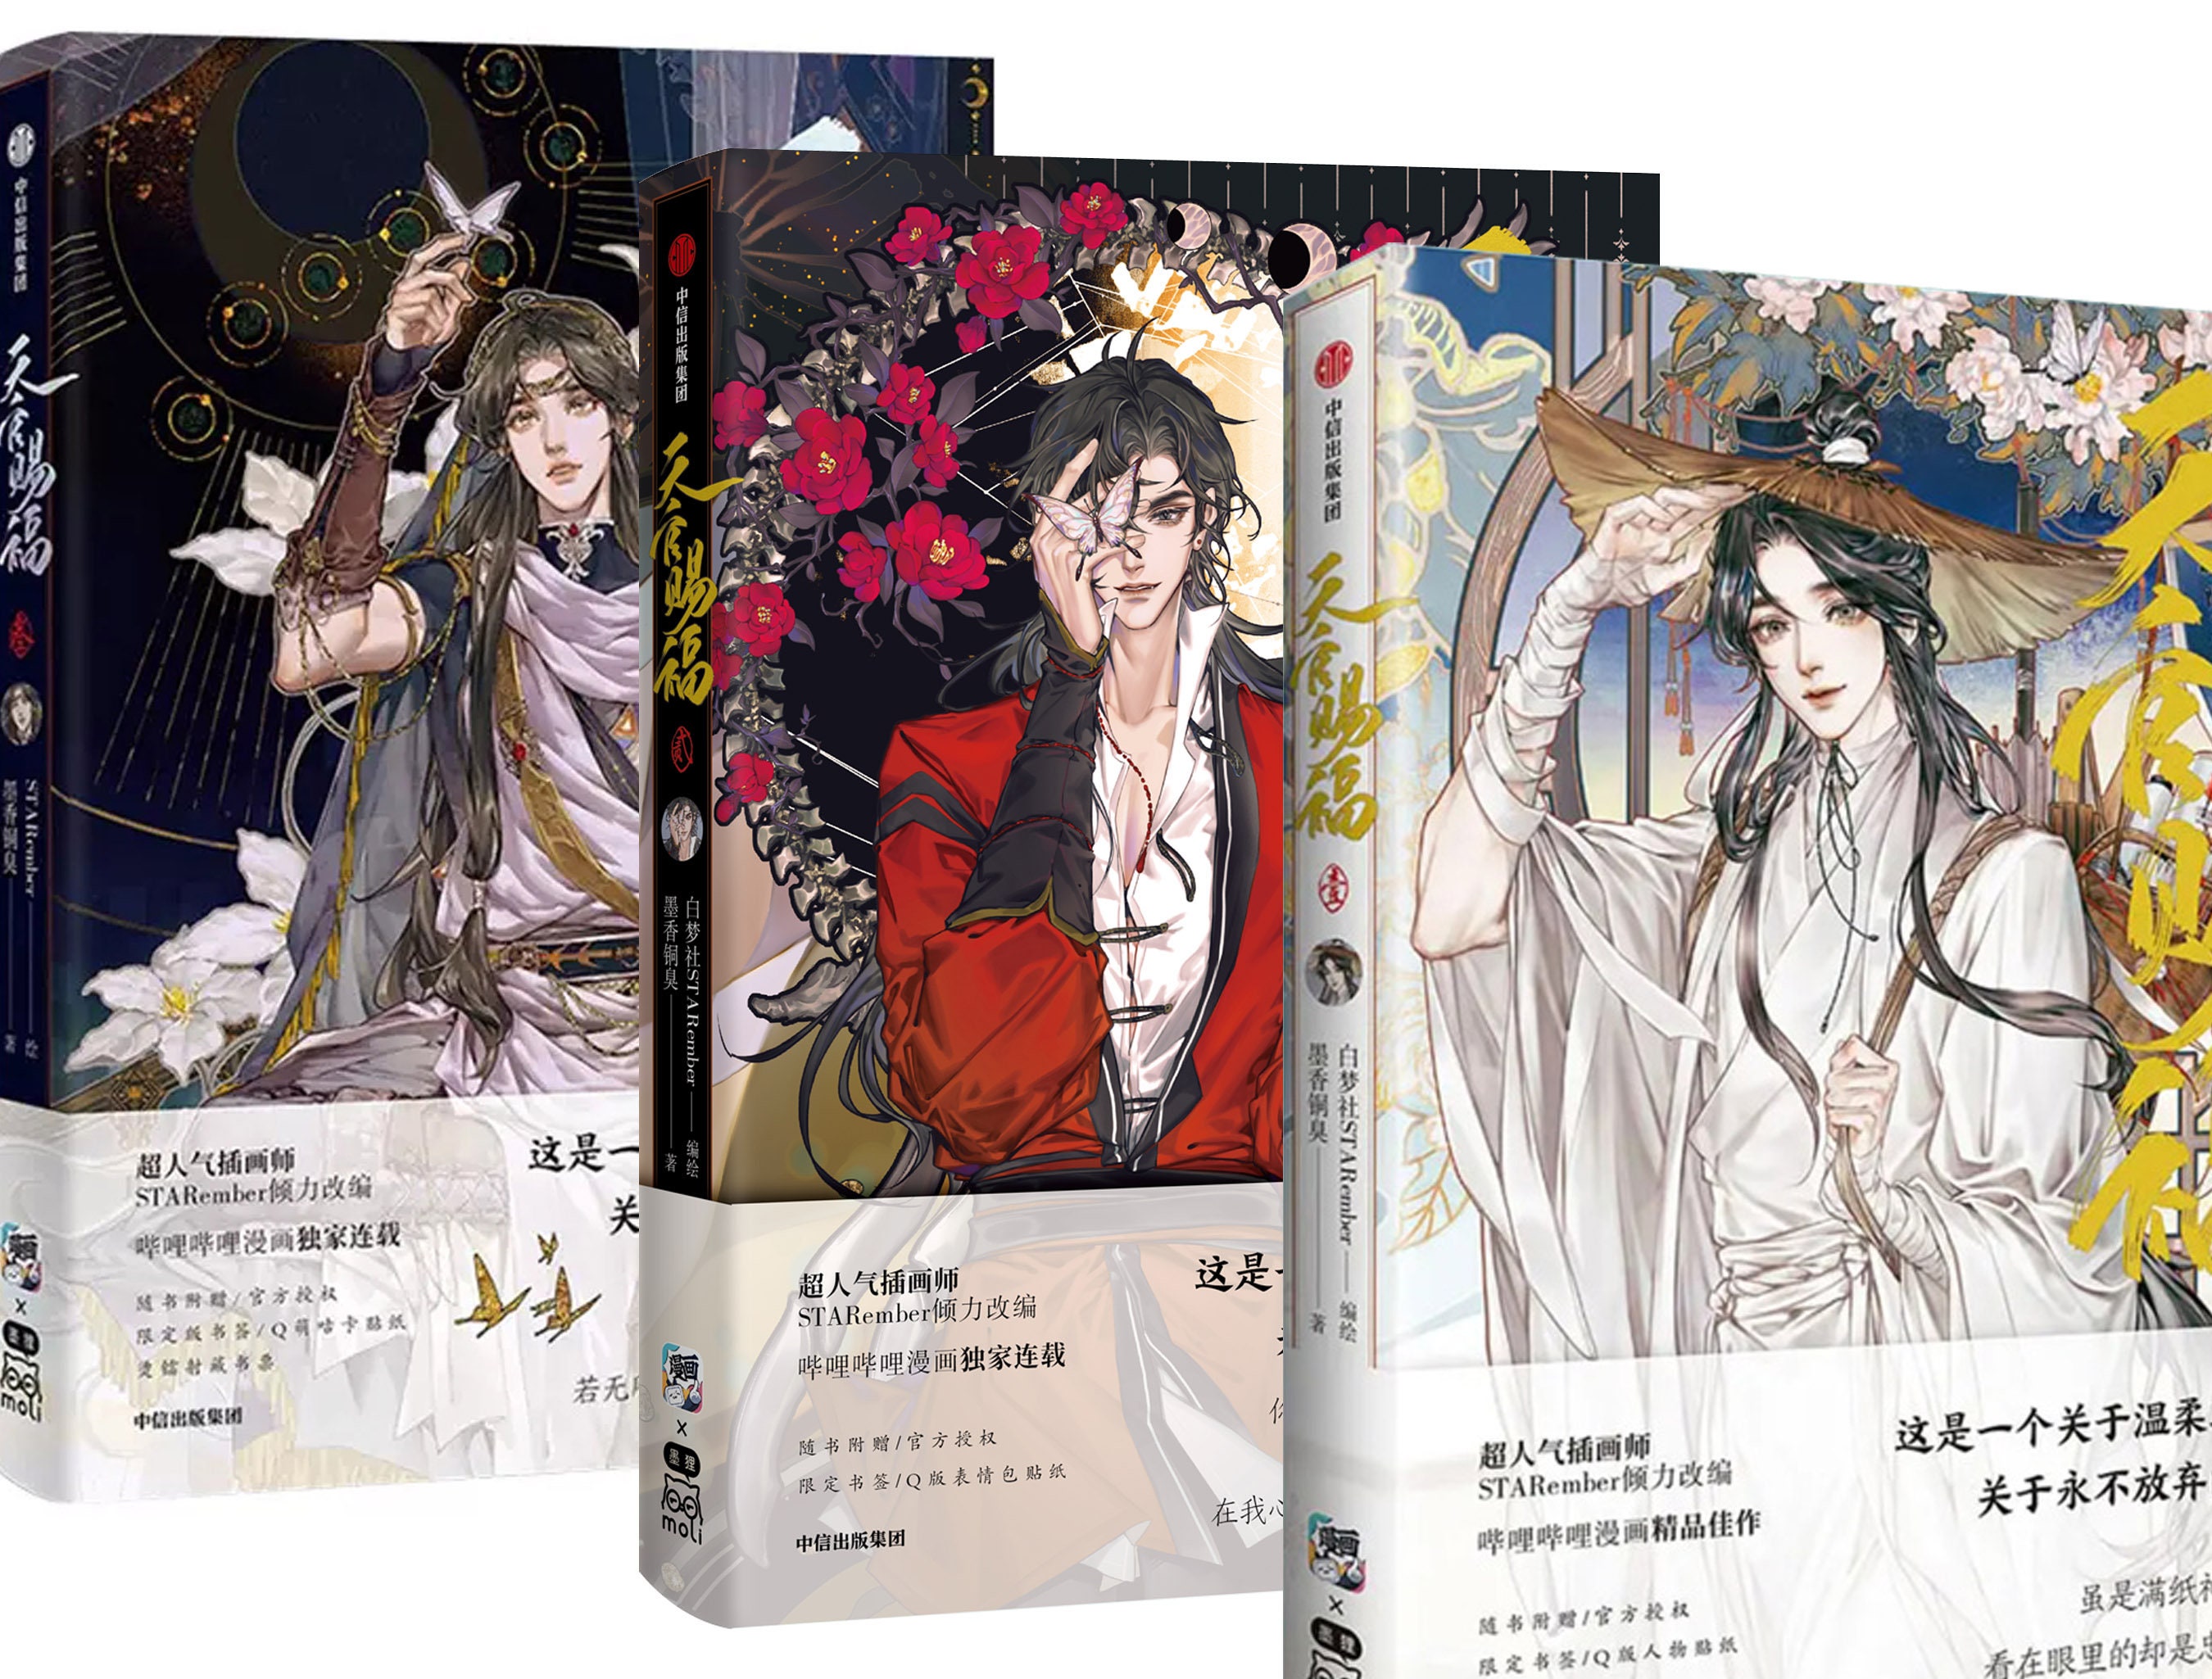 Grandmaster of Demonic Cultivation: Mo Dao Zu Shi (The Comic / Manhua) Vol.  2 Comics, Graphic Novels, & Manga eBook by Mo Xiang Tong Xiu - EPUB Book